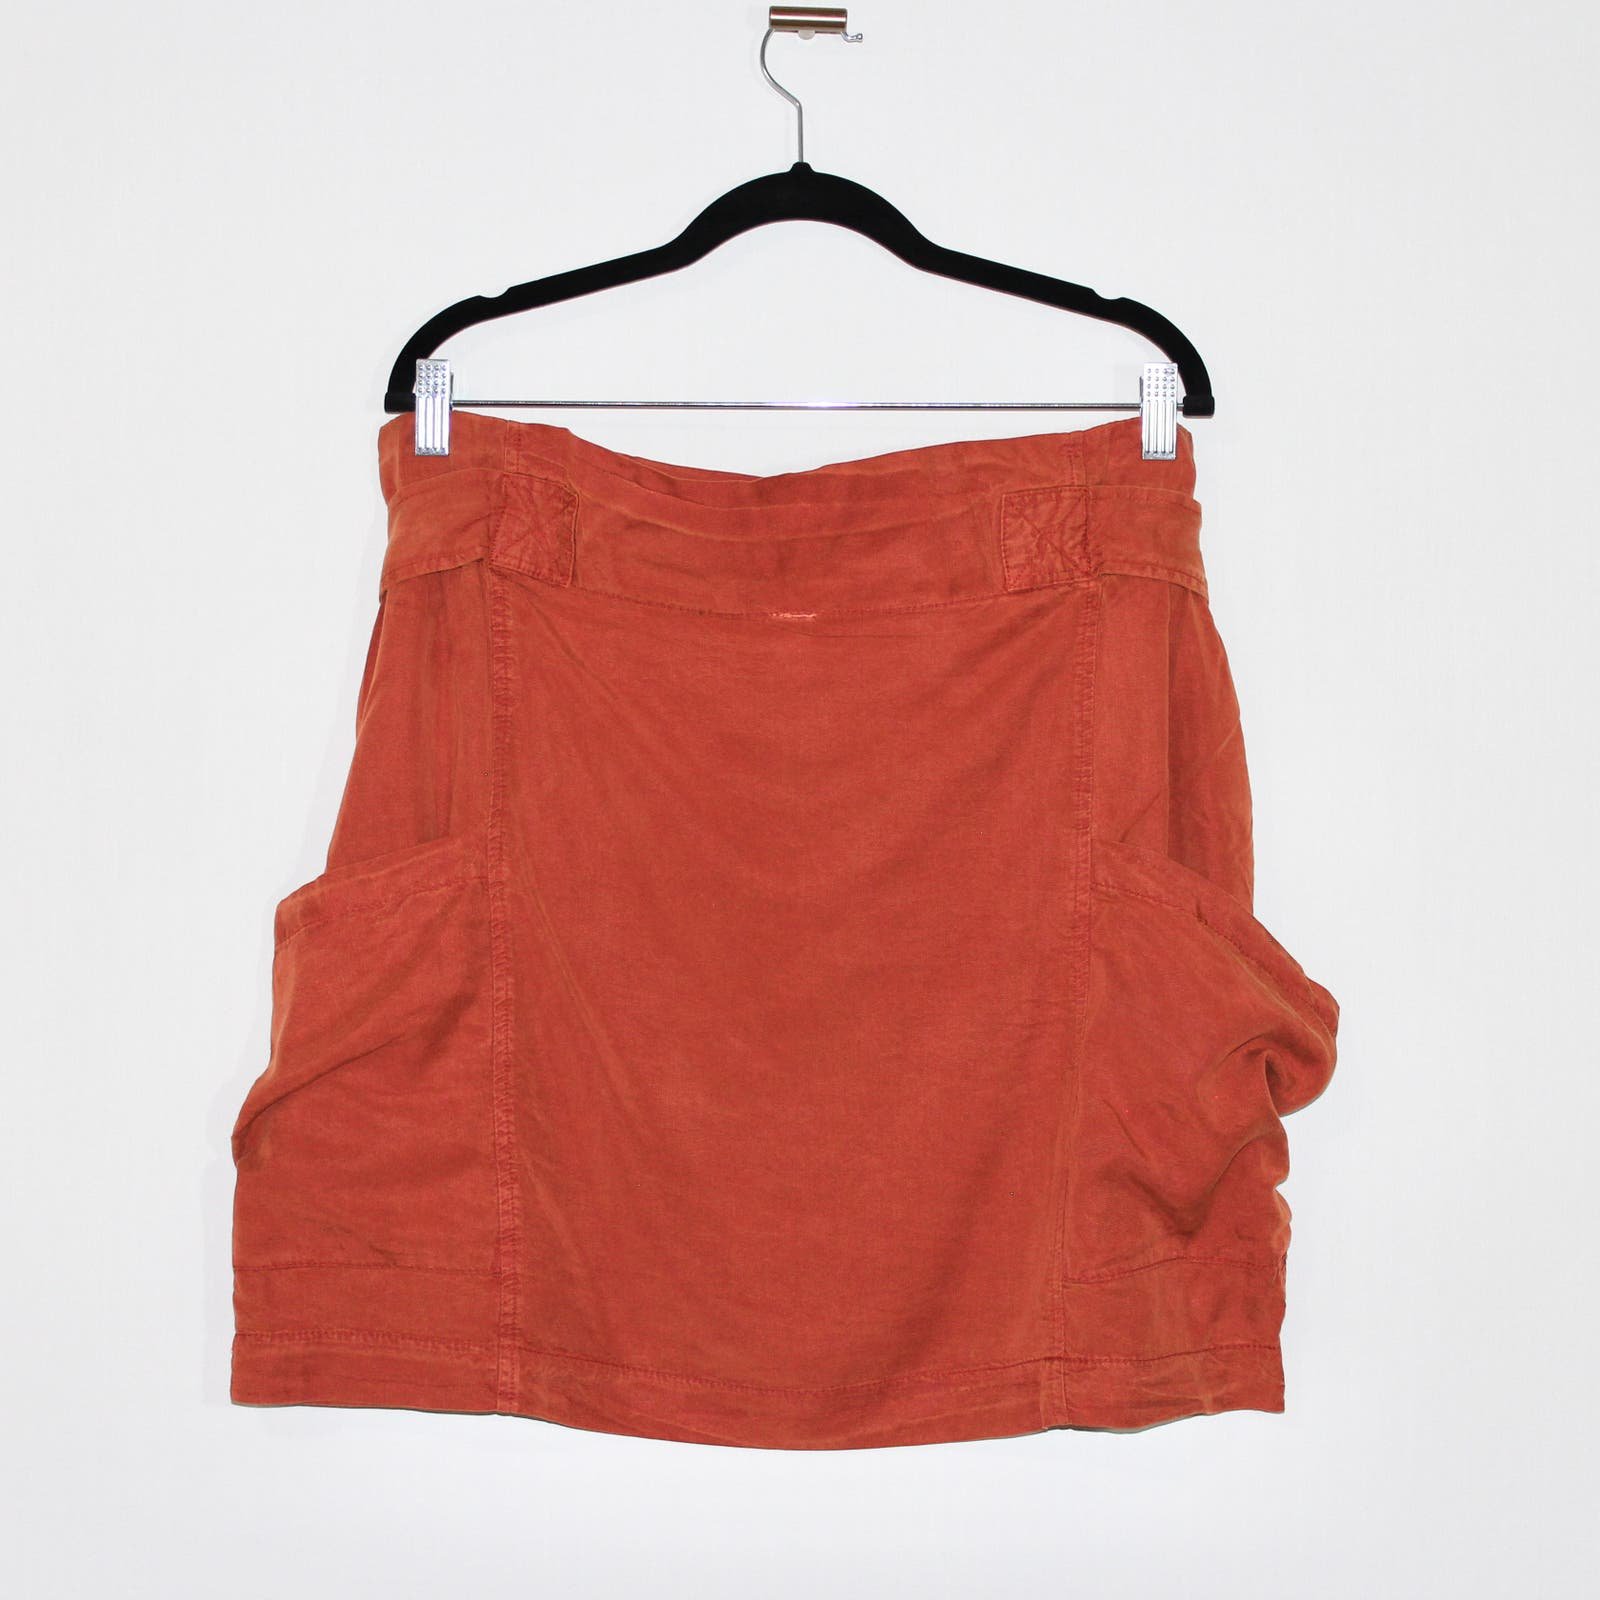 Discounted Anthropologie Nantes Mini Skirt Orange Size XL NWT plXSaqa2W High Quaity